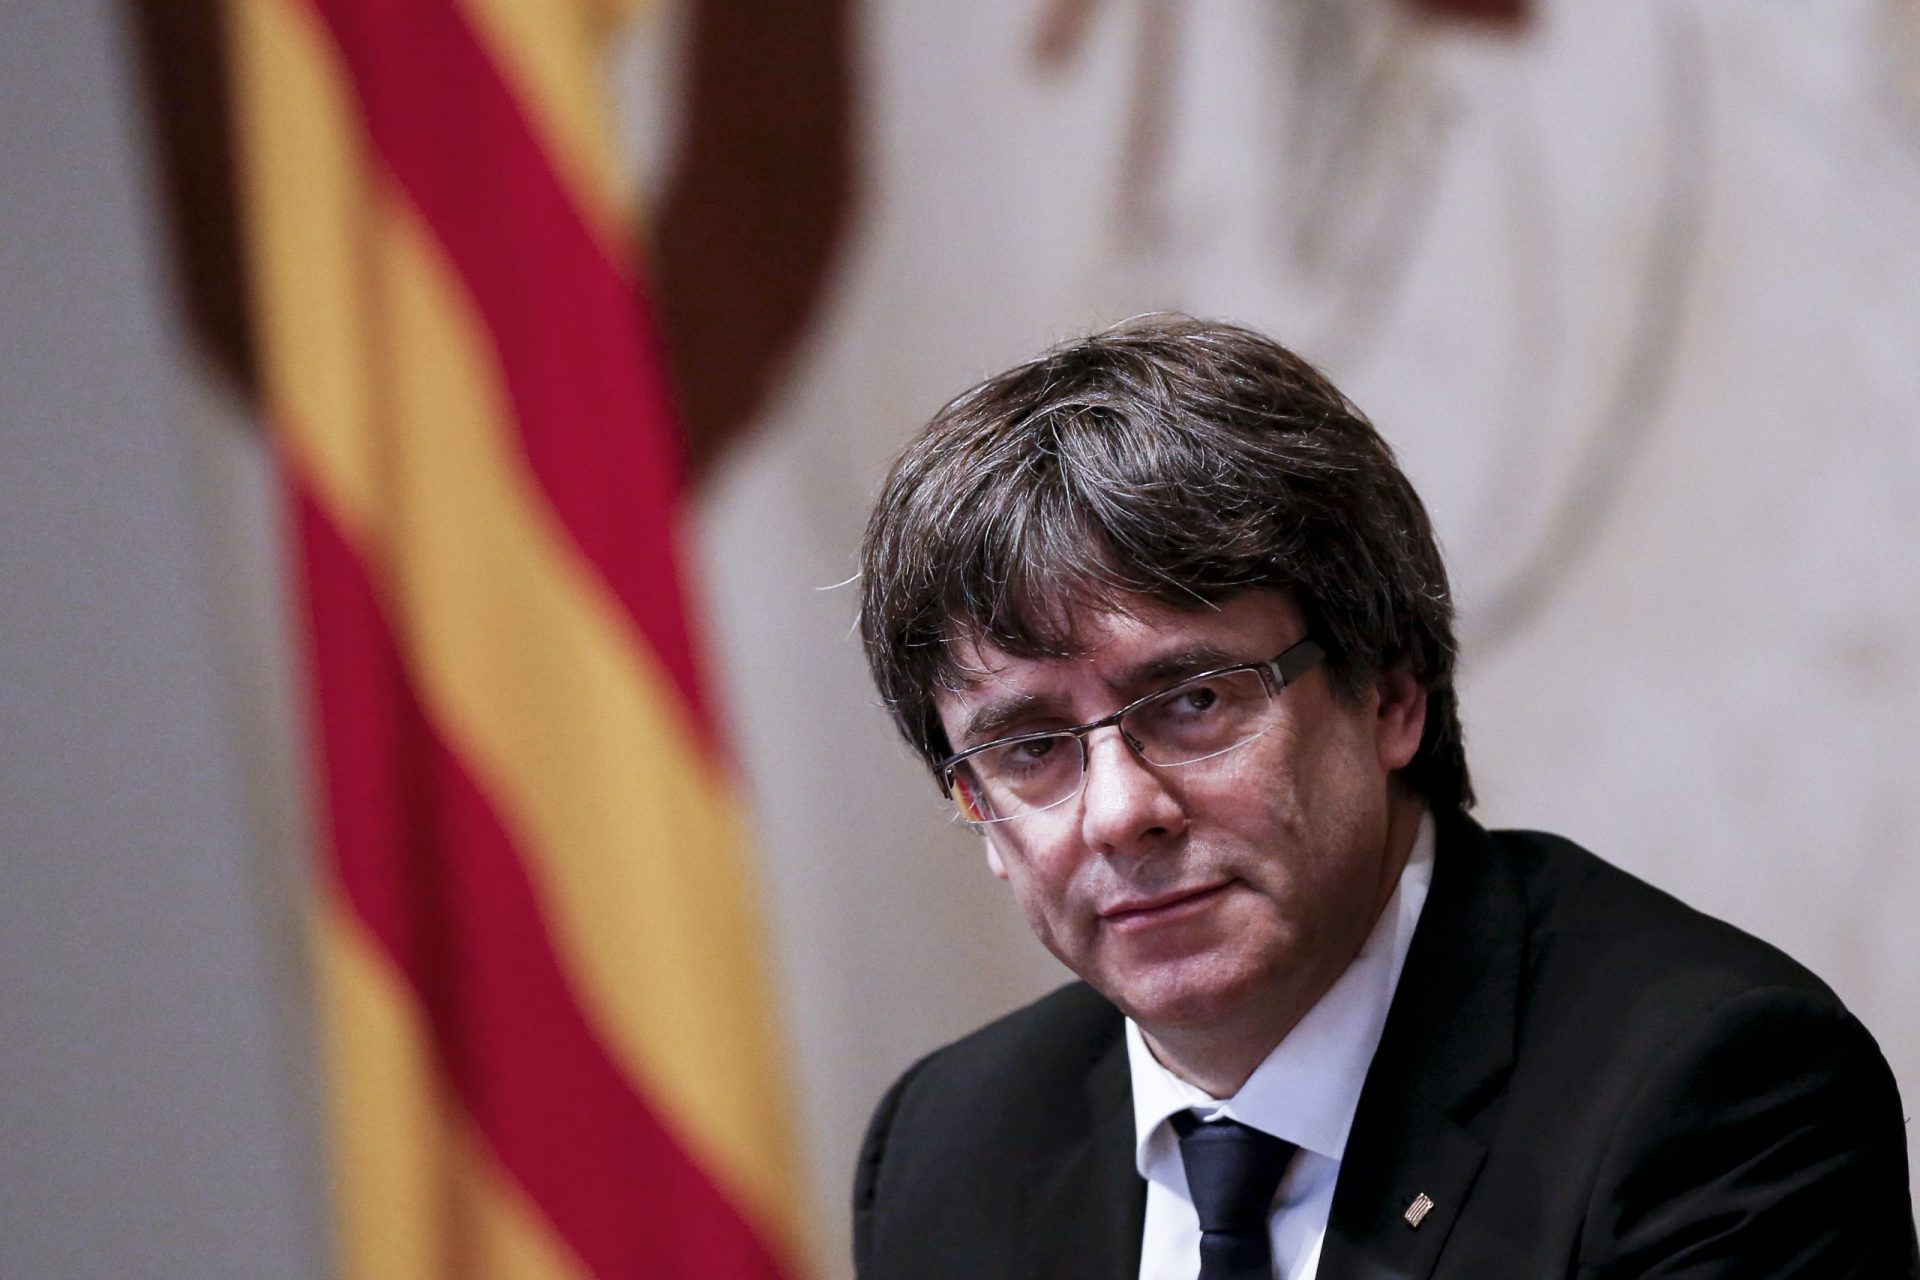 Puigdemont: “Suponho que tenhas claro que isto acabou. Os nossos sacrificaram-nos, pelo menos a mim”